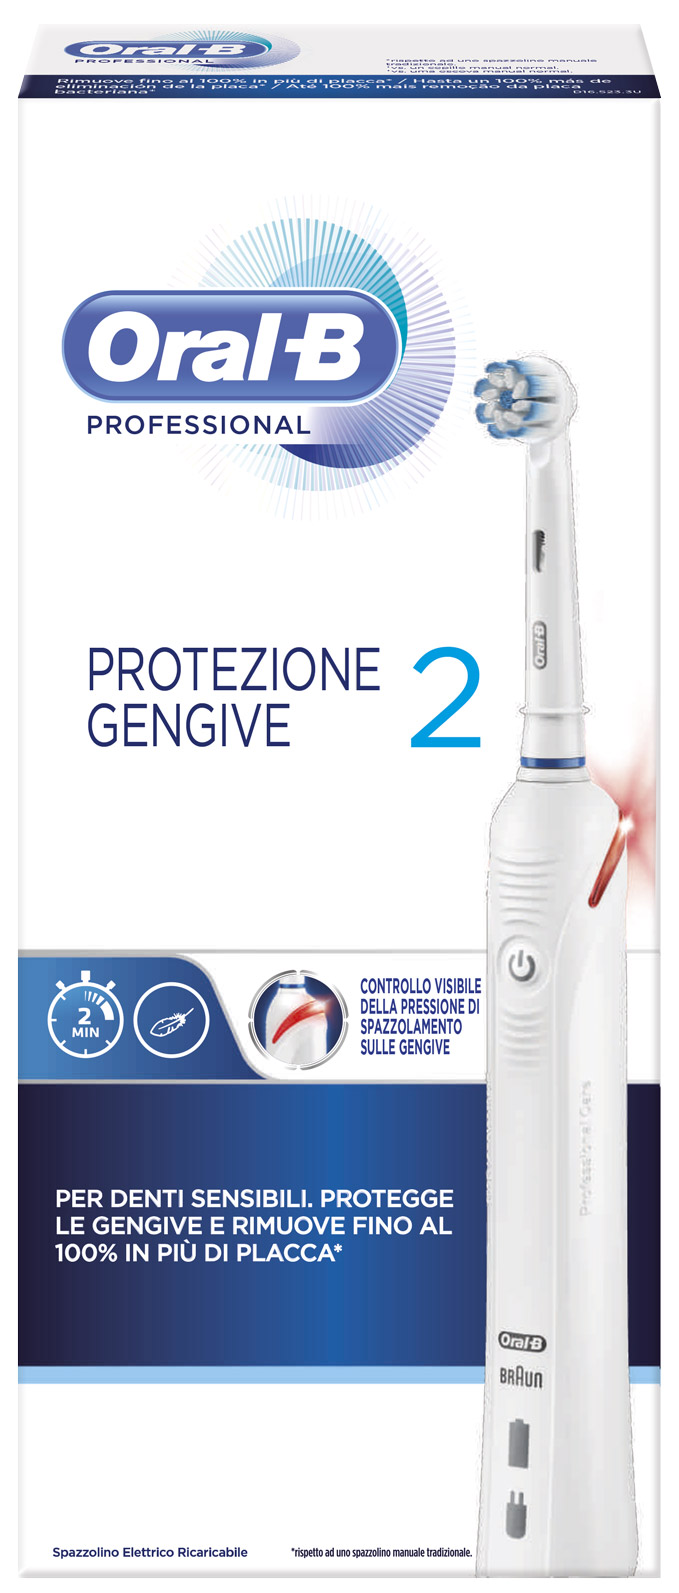 Image of Oral-B(R) Professional Protezione Gengive 2 Spazzolino Elettrico